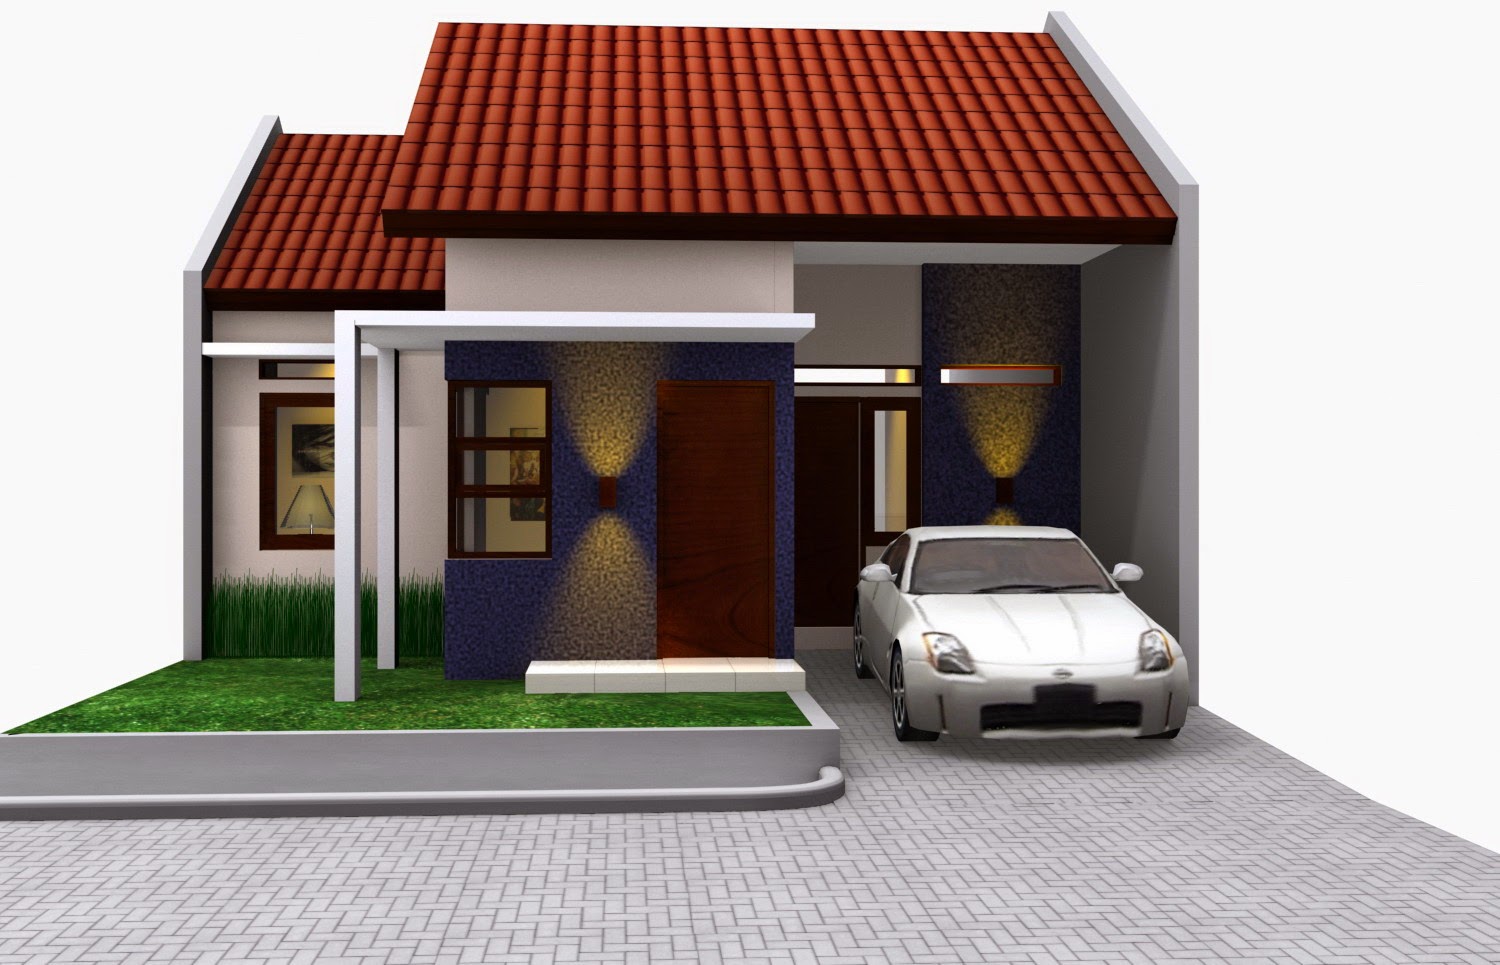 Desain Rumah Sederhana Bergarasi Contoh Rumah Sederhana Di Kampung